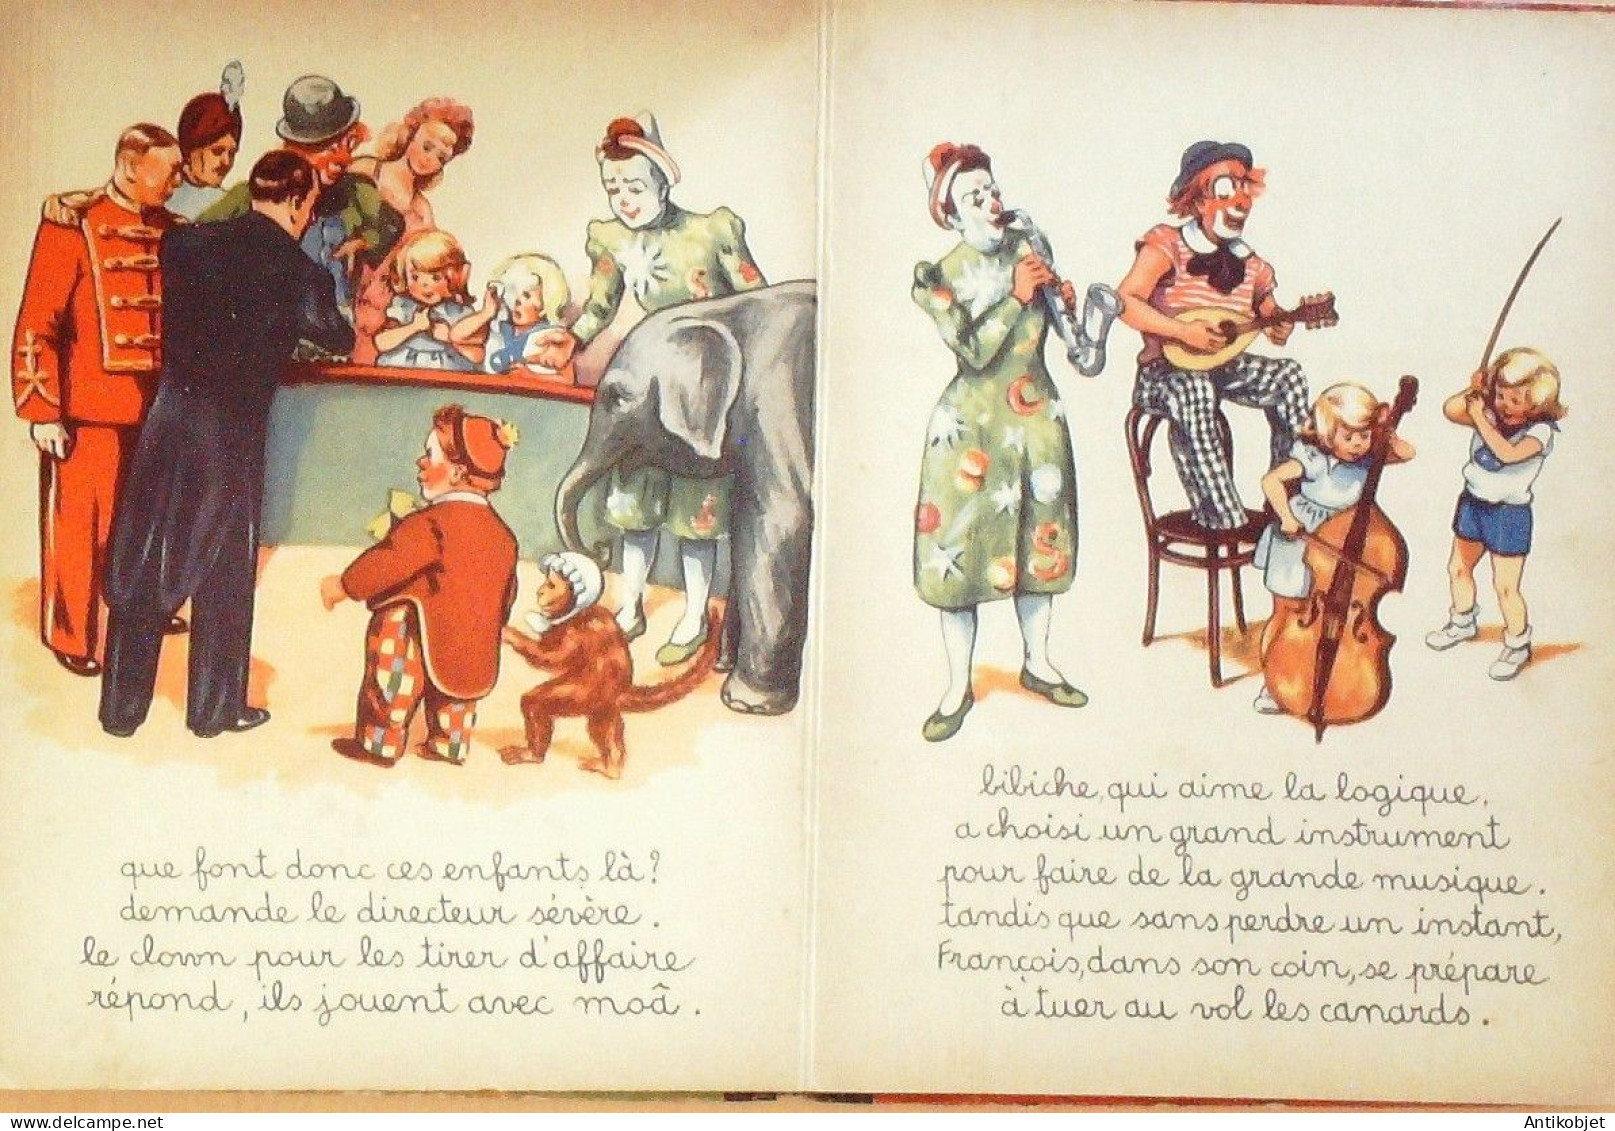 Bibiche et François au cirque par Blanchard édition Barre Eo 1947